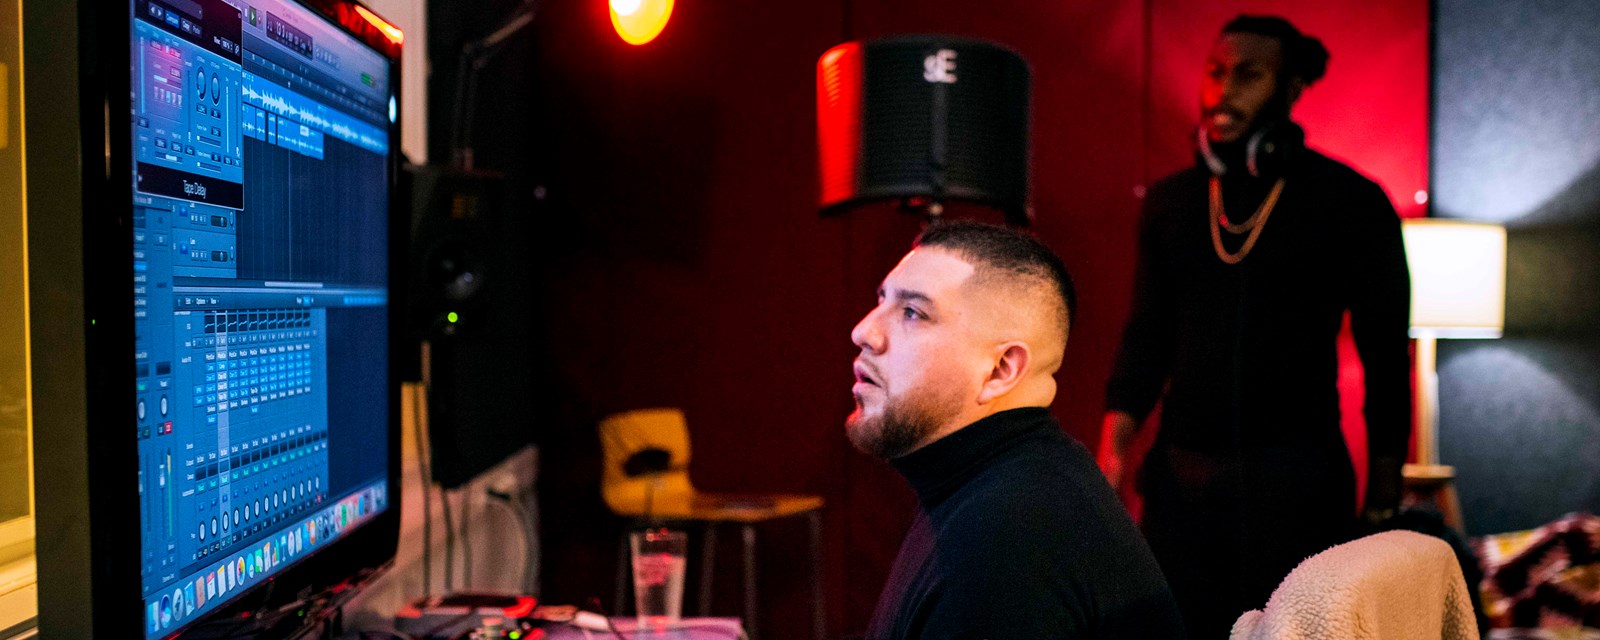 Jonathan Castro driver musikktilbudet Hiphop 101 for ungdom. Her er han i studio på Fellesverktet Sentrum sammen med deltaker Leo. 